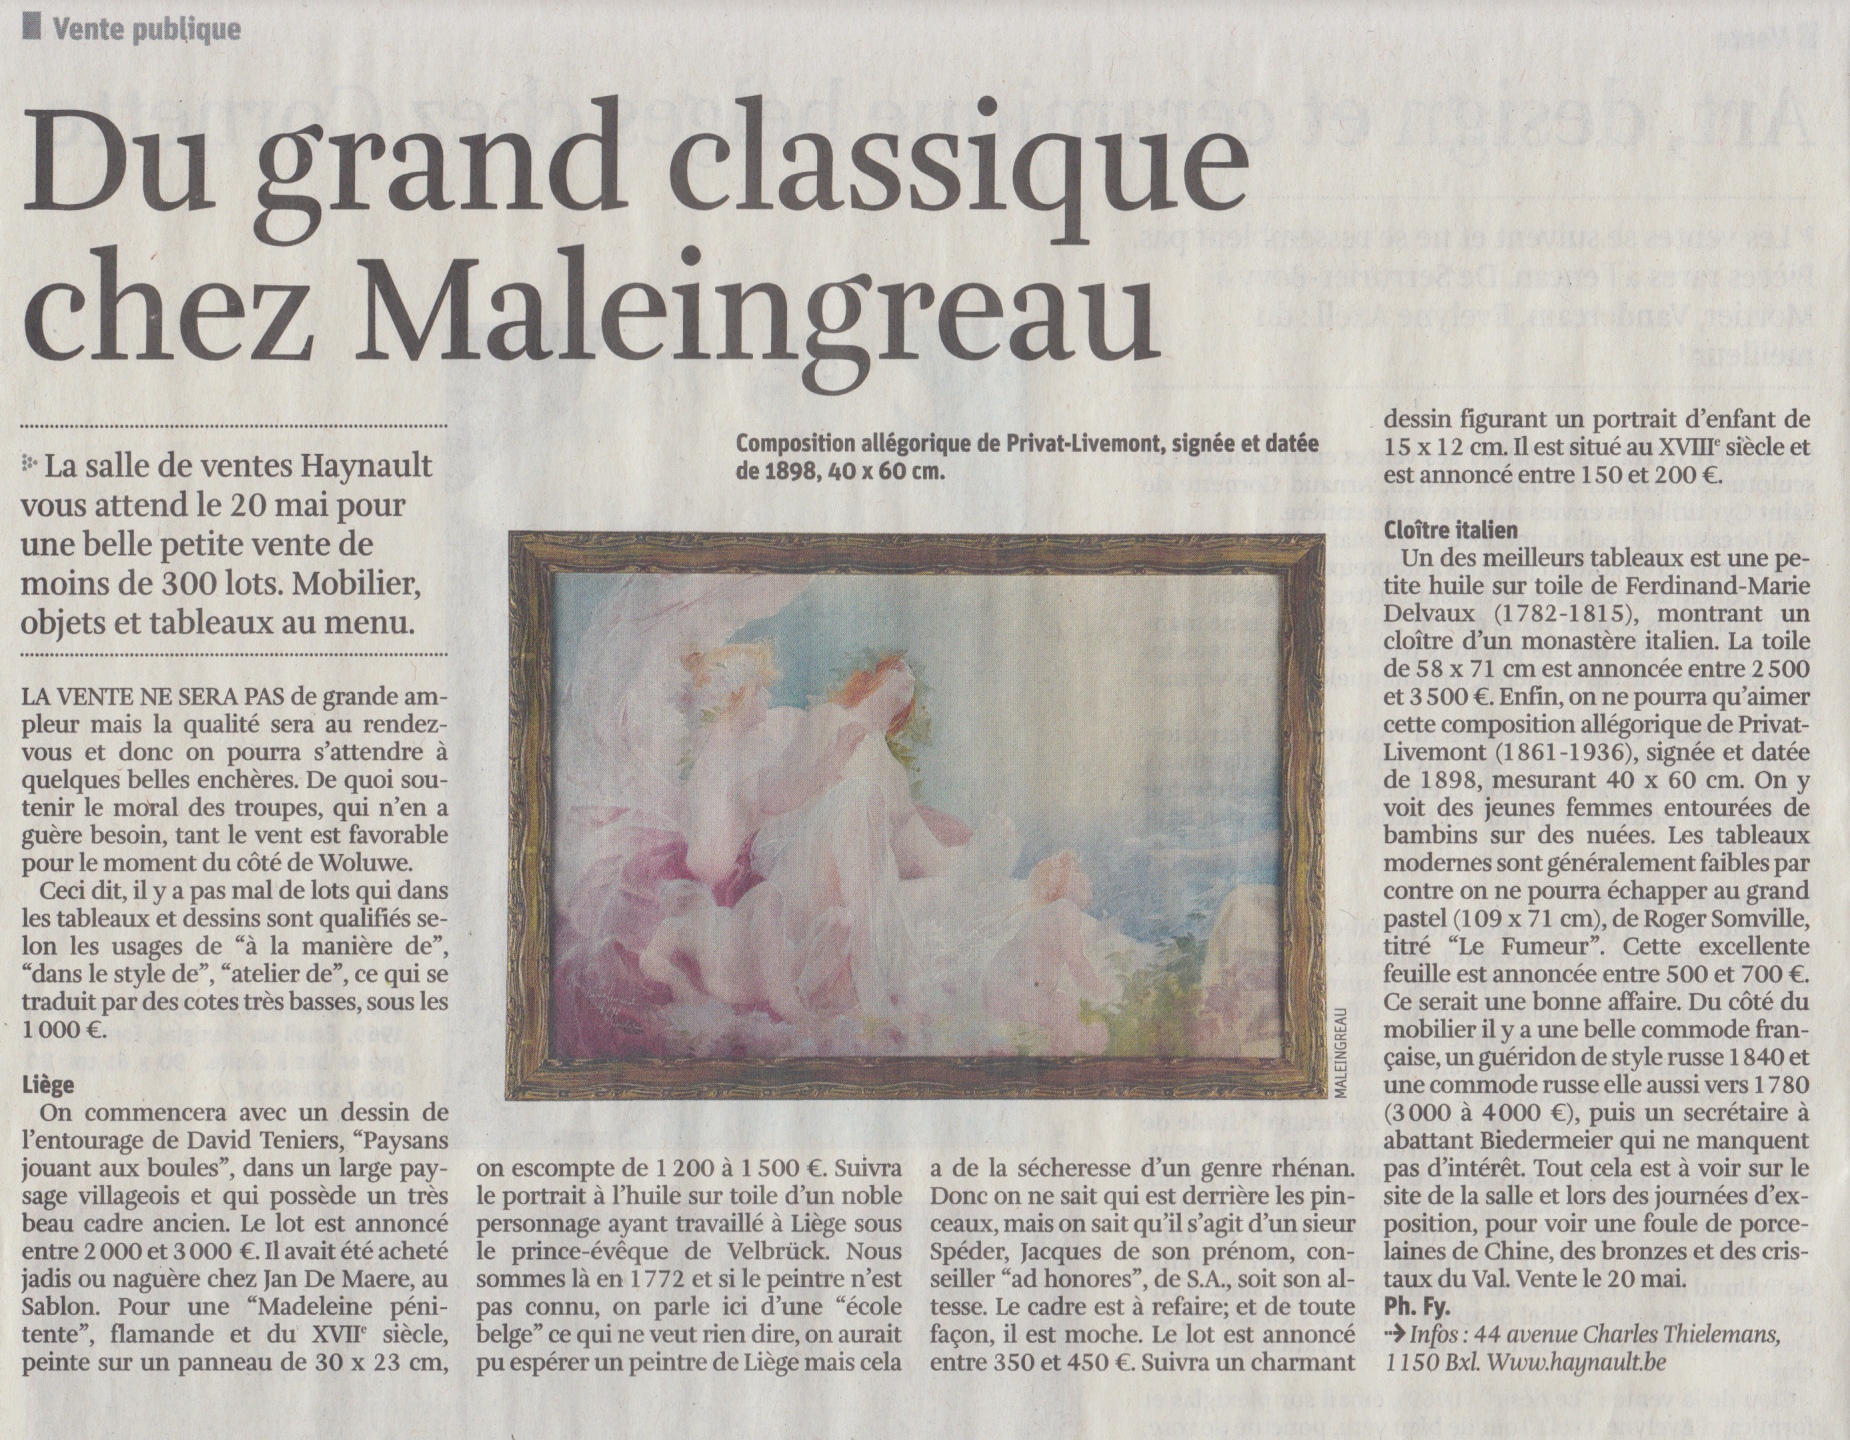 Du grand classique chez Maleingreau - La Libre Belgique - Wednesday, May 17th 2017